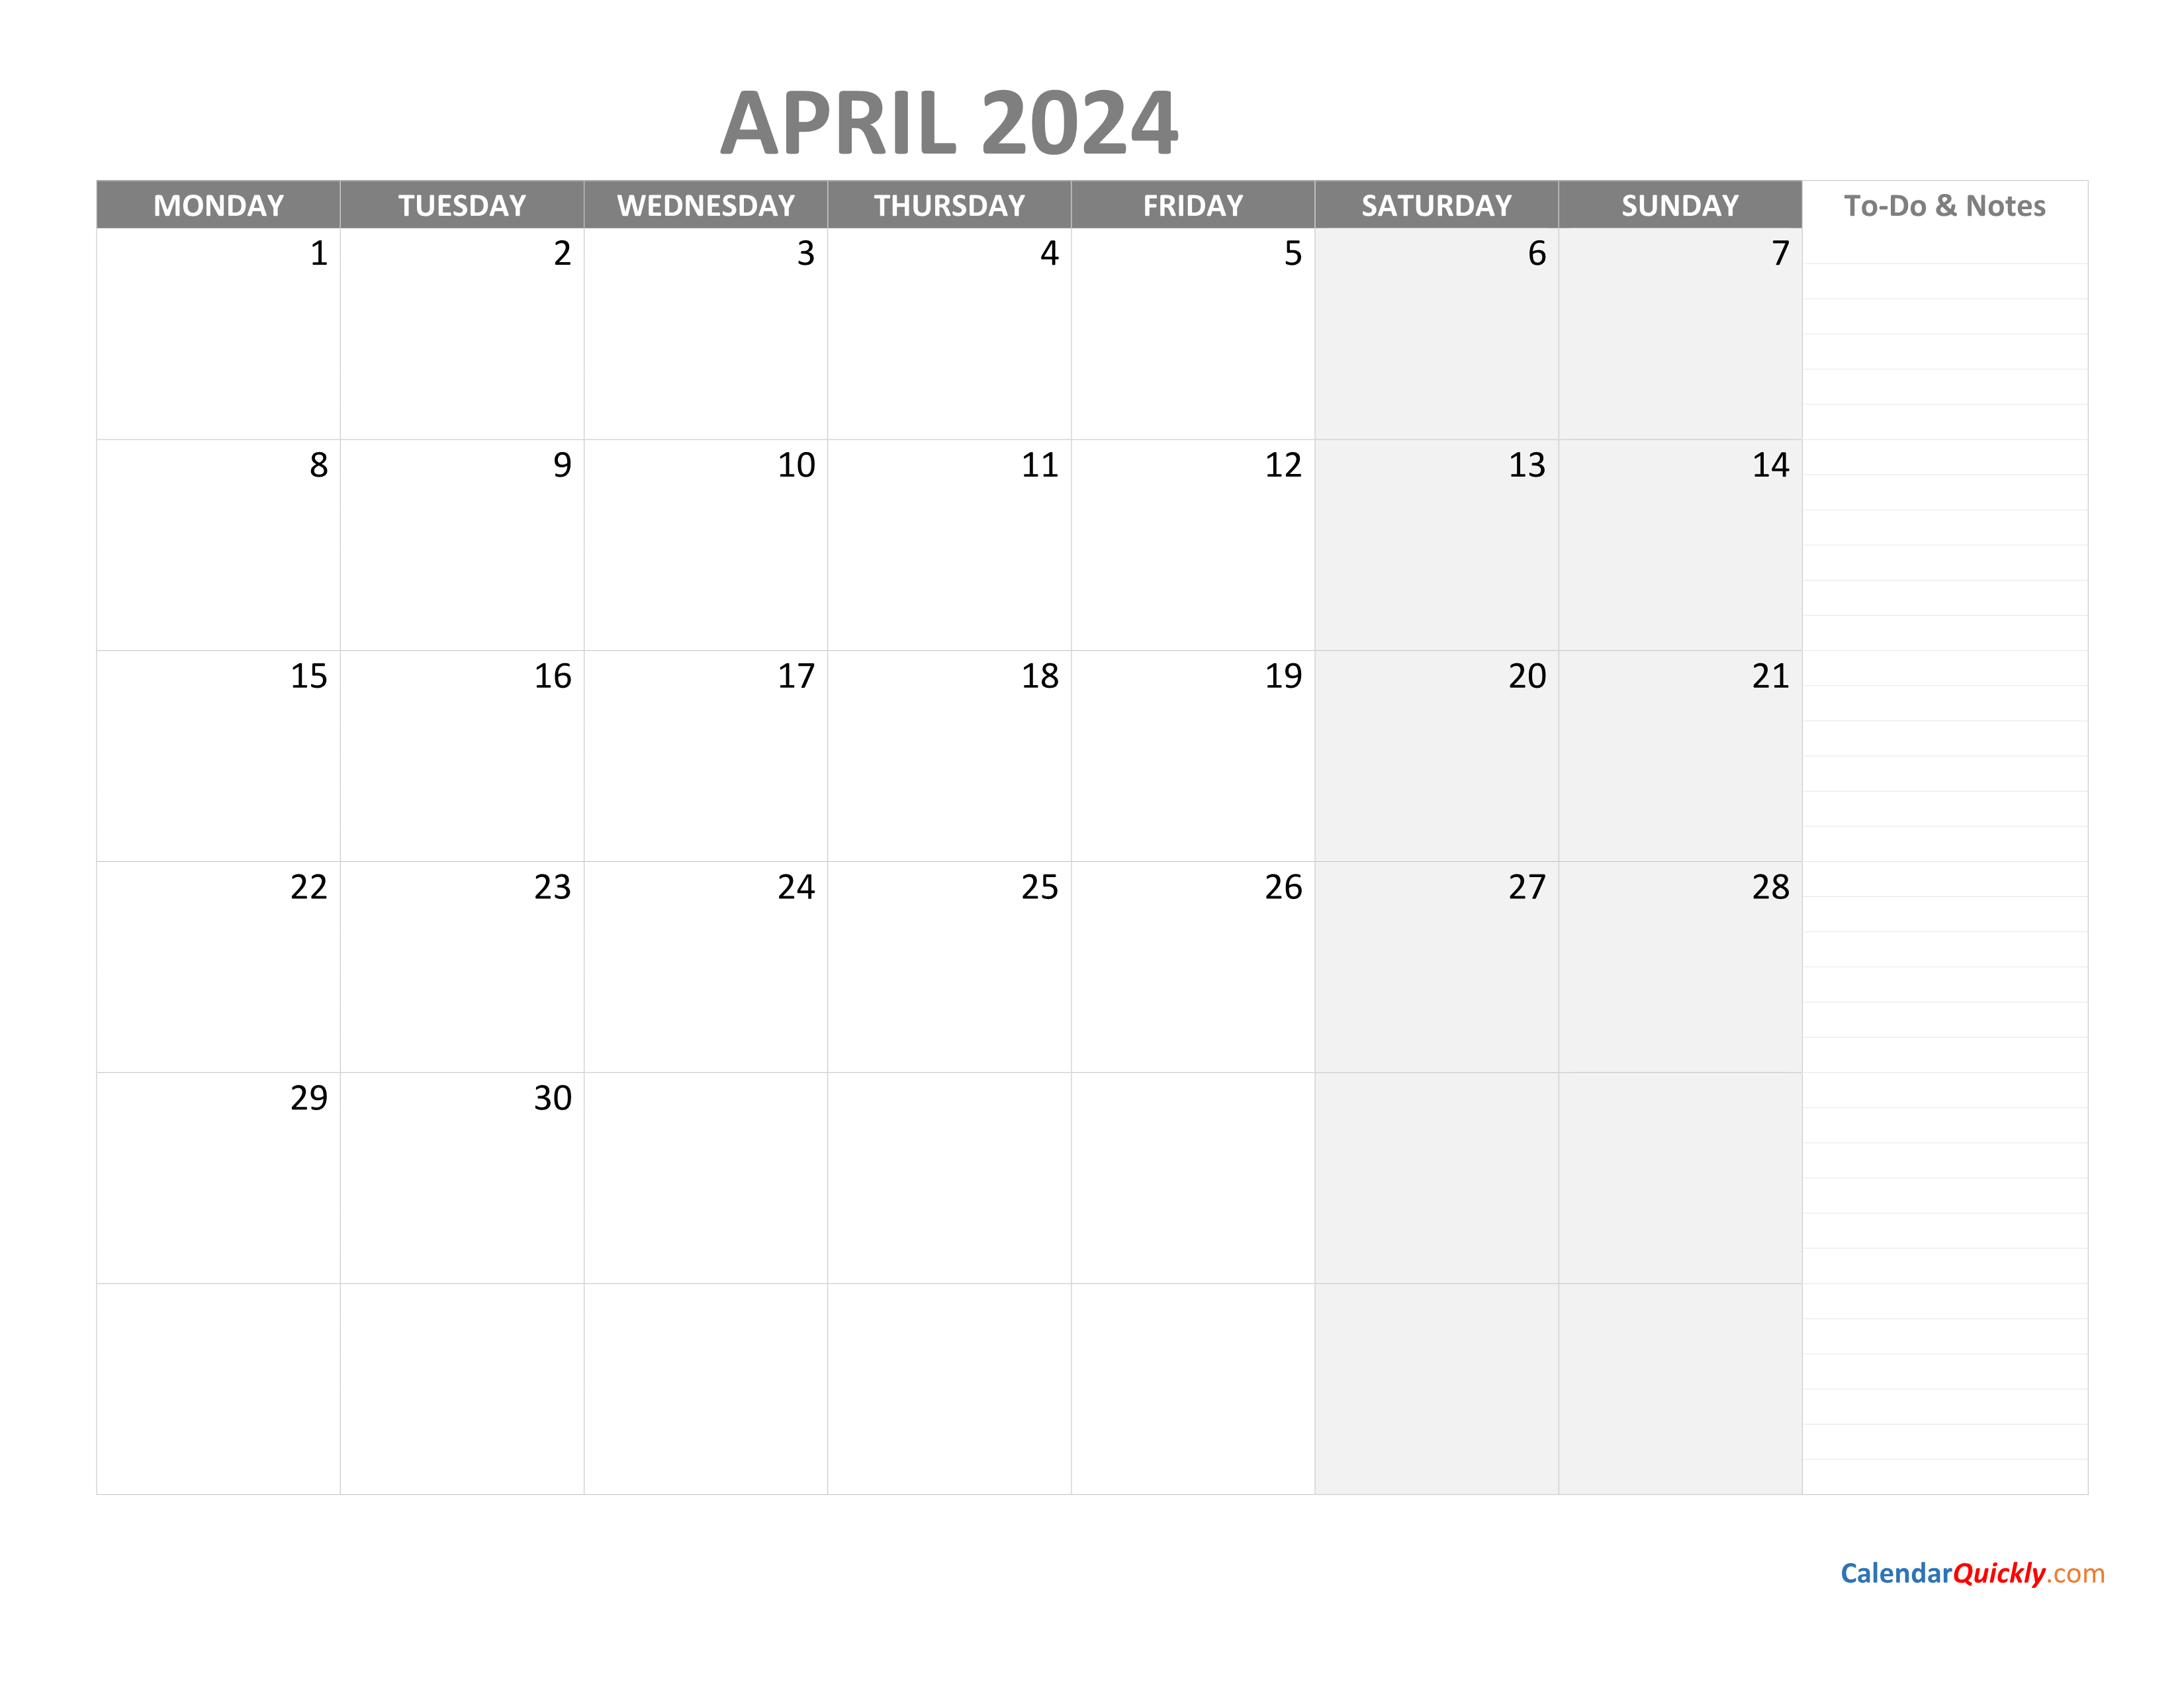 April Monday Calendar 2024 with Notes | Calendar Quickly